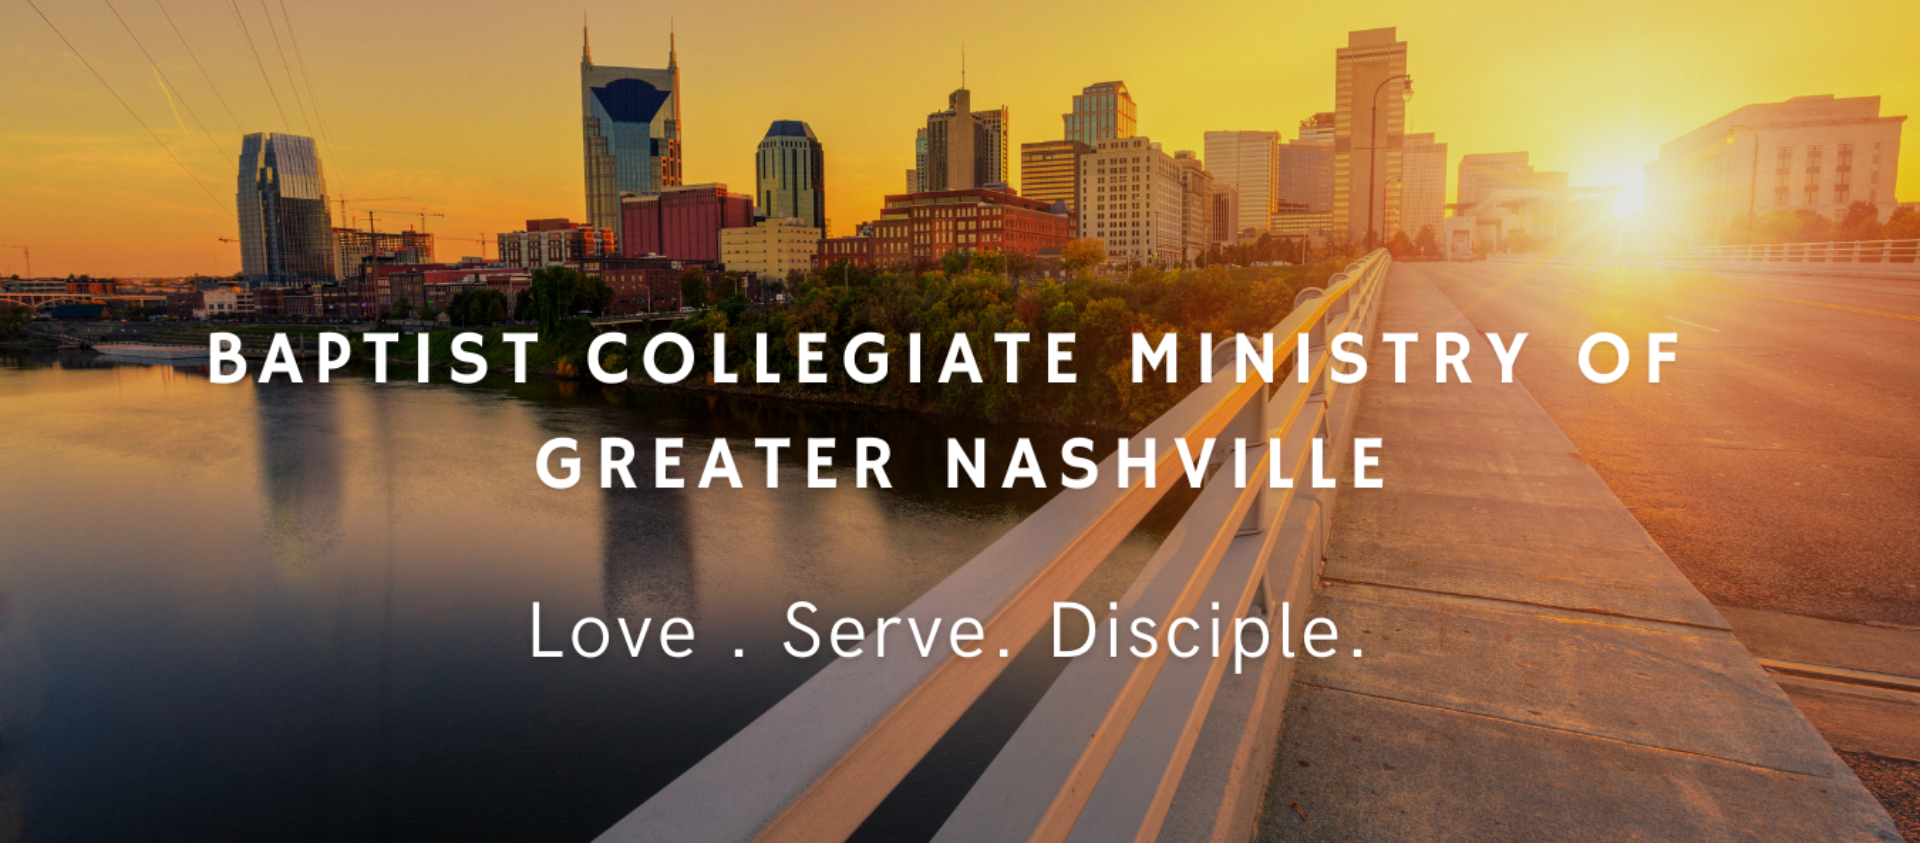 Baptist Collegiate Ministry of Greater Nashville